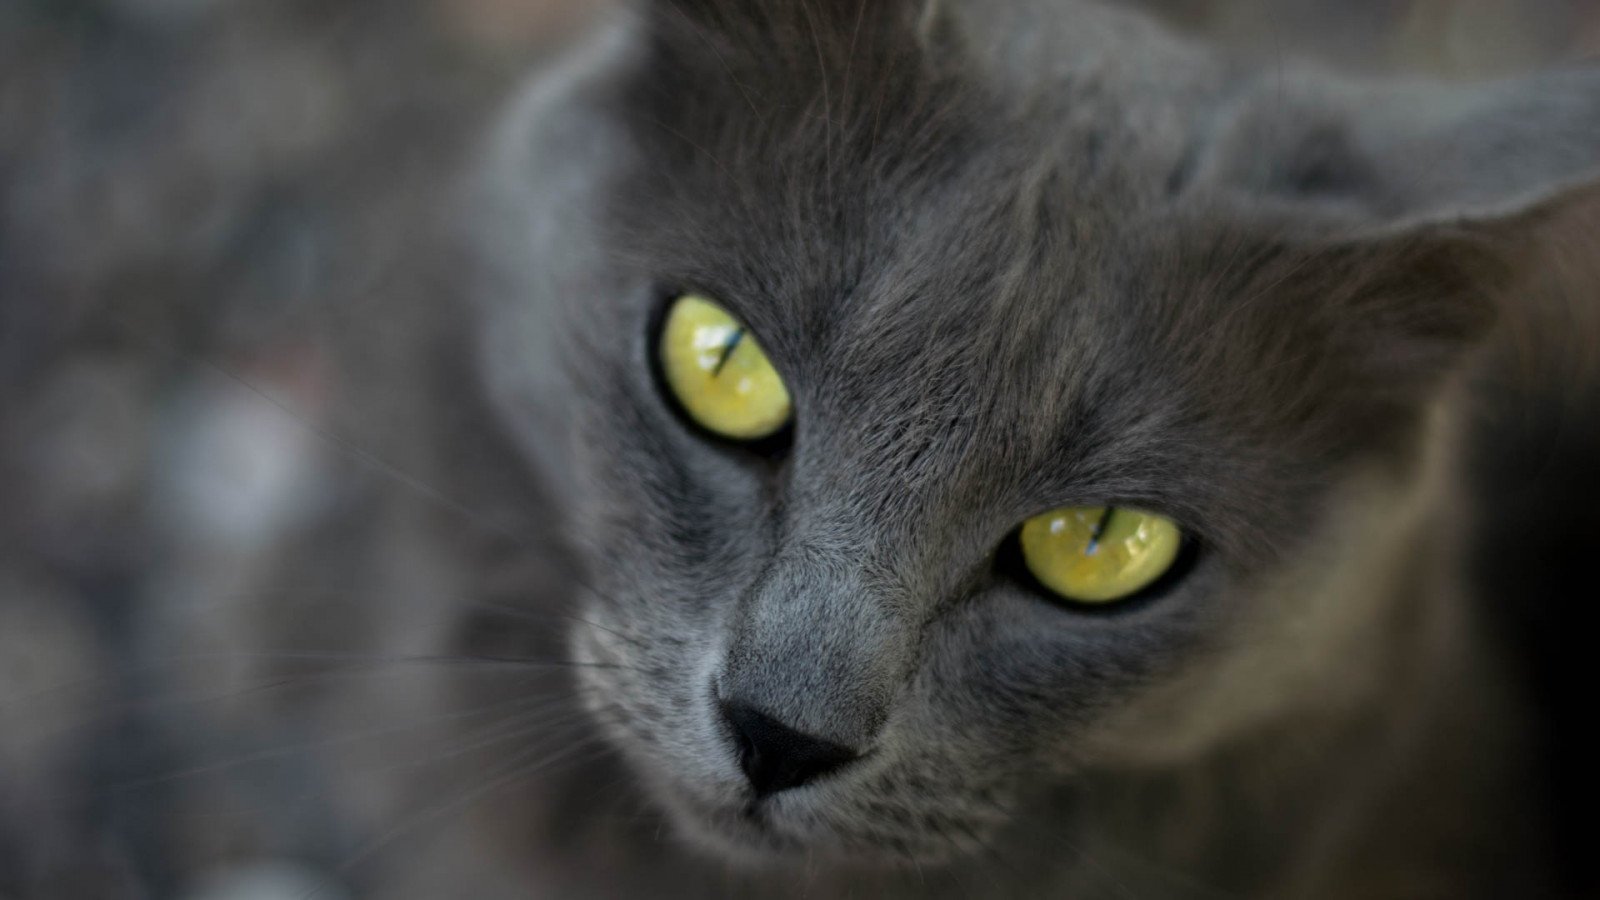 Кошачьи глаза у человека фото